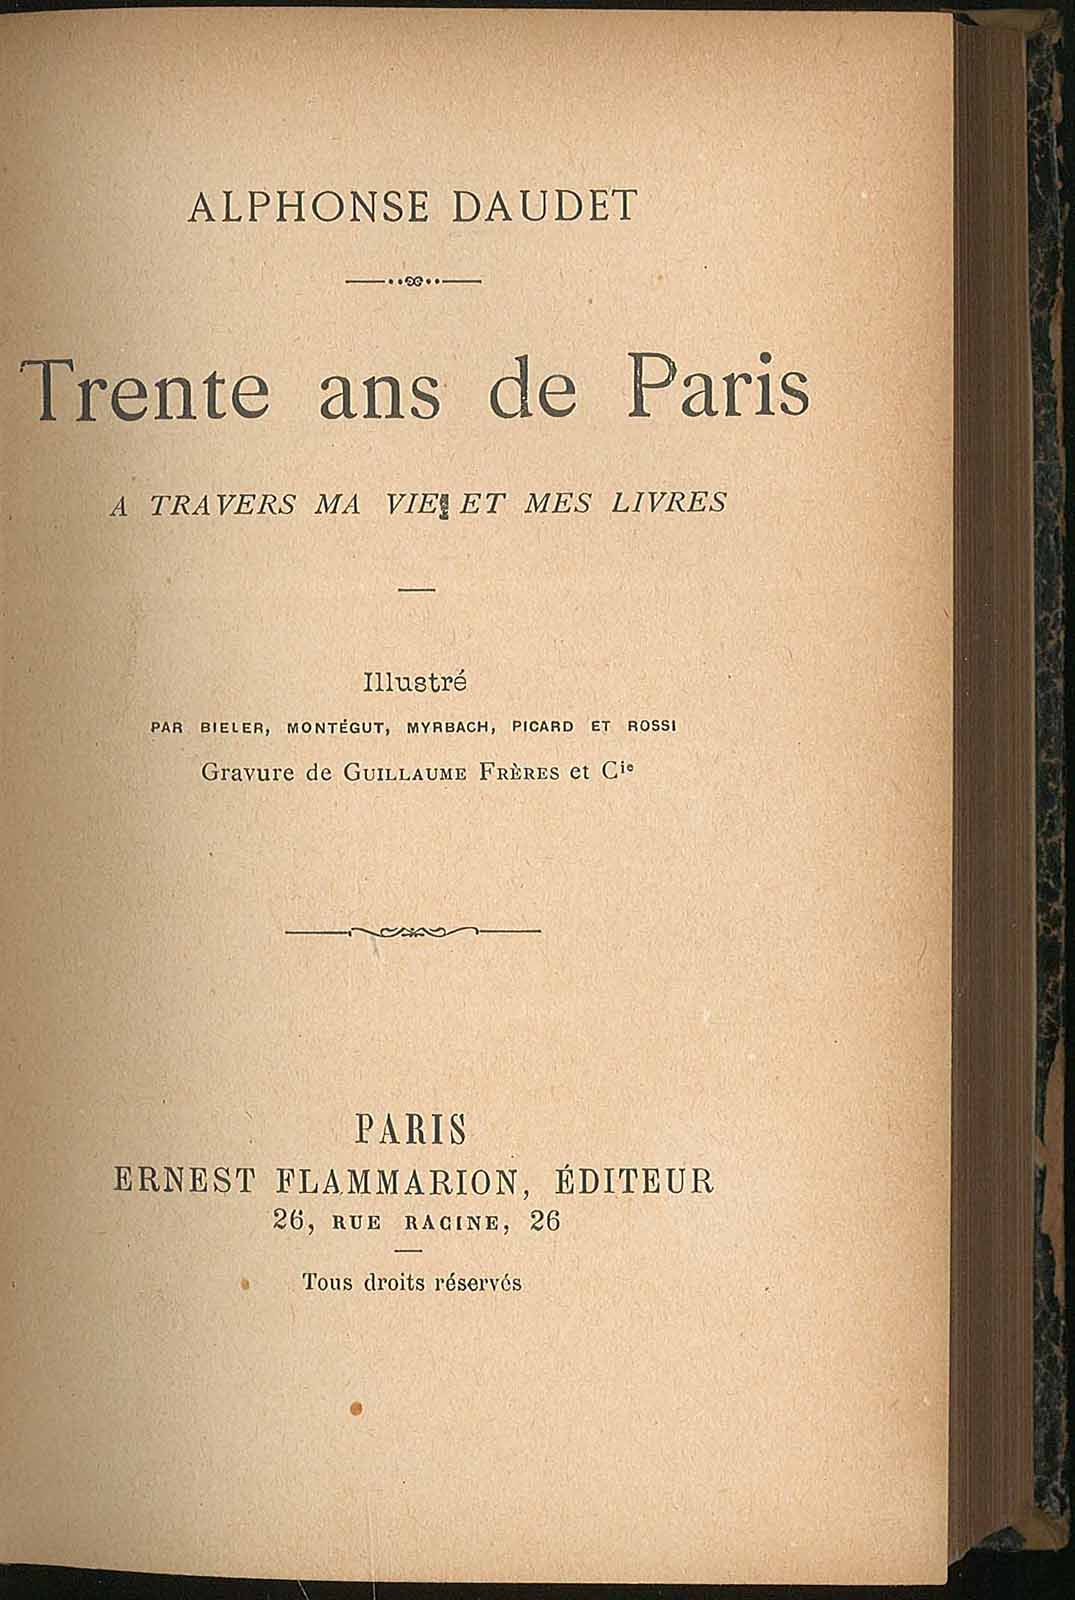 Trente ans de Paris a travers ma vie et mes livres by Daudet Alphonse ...